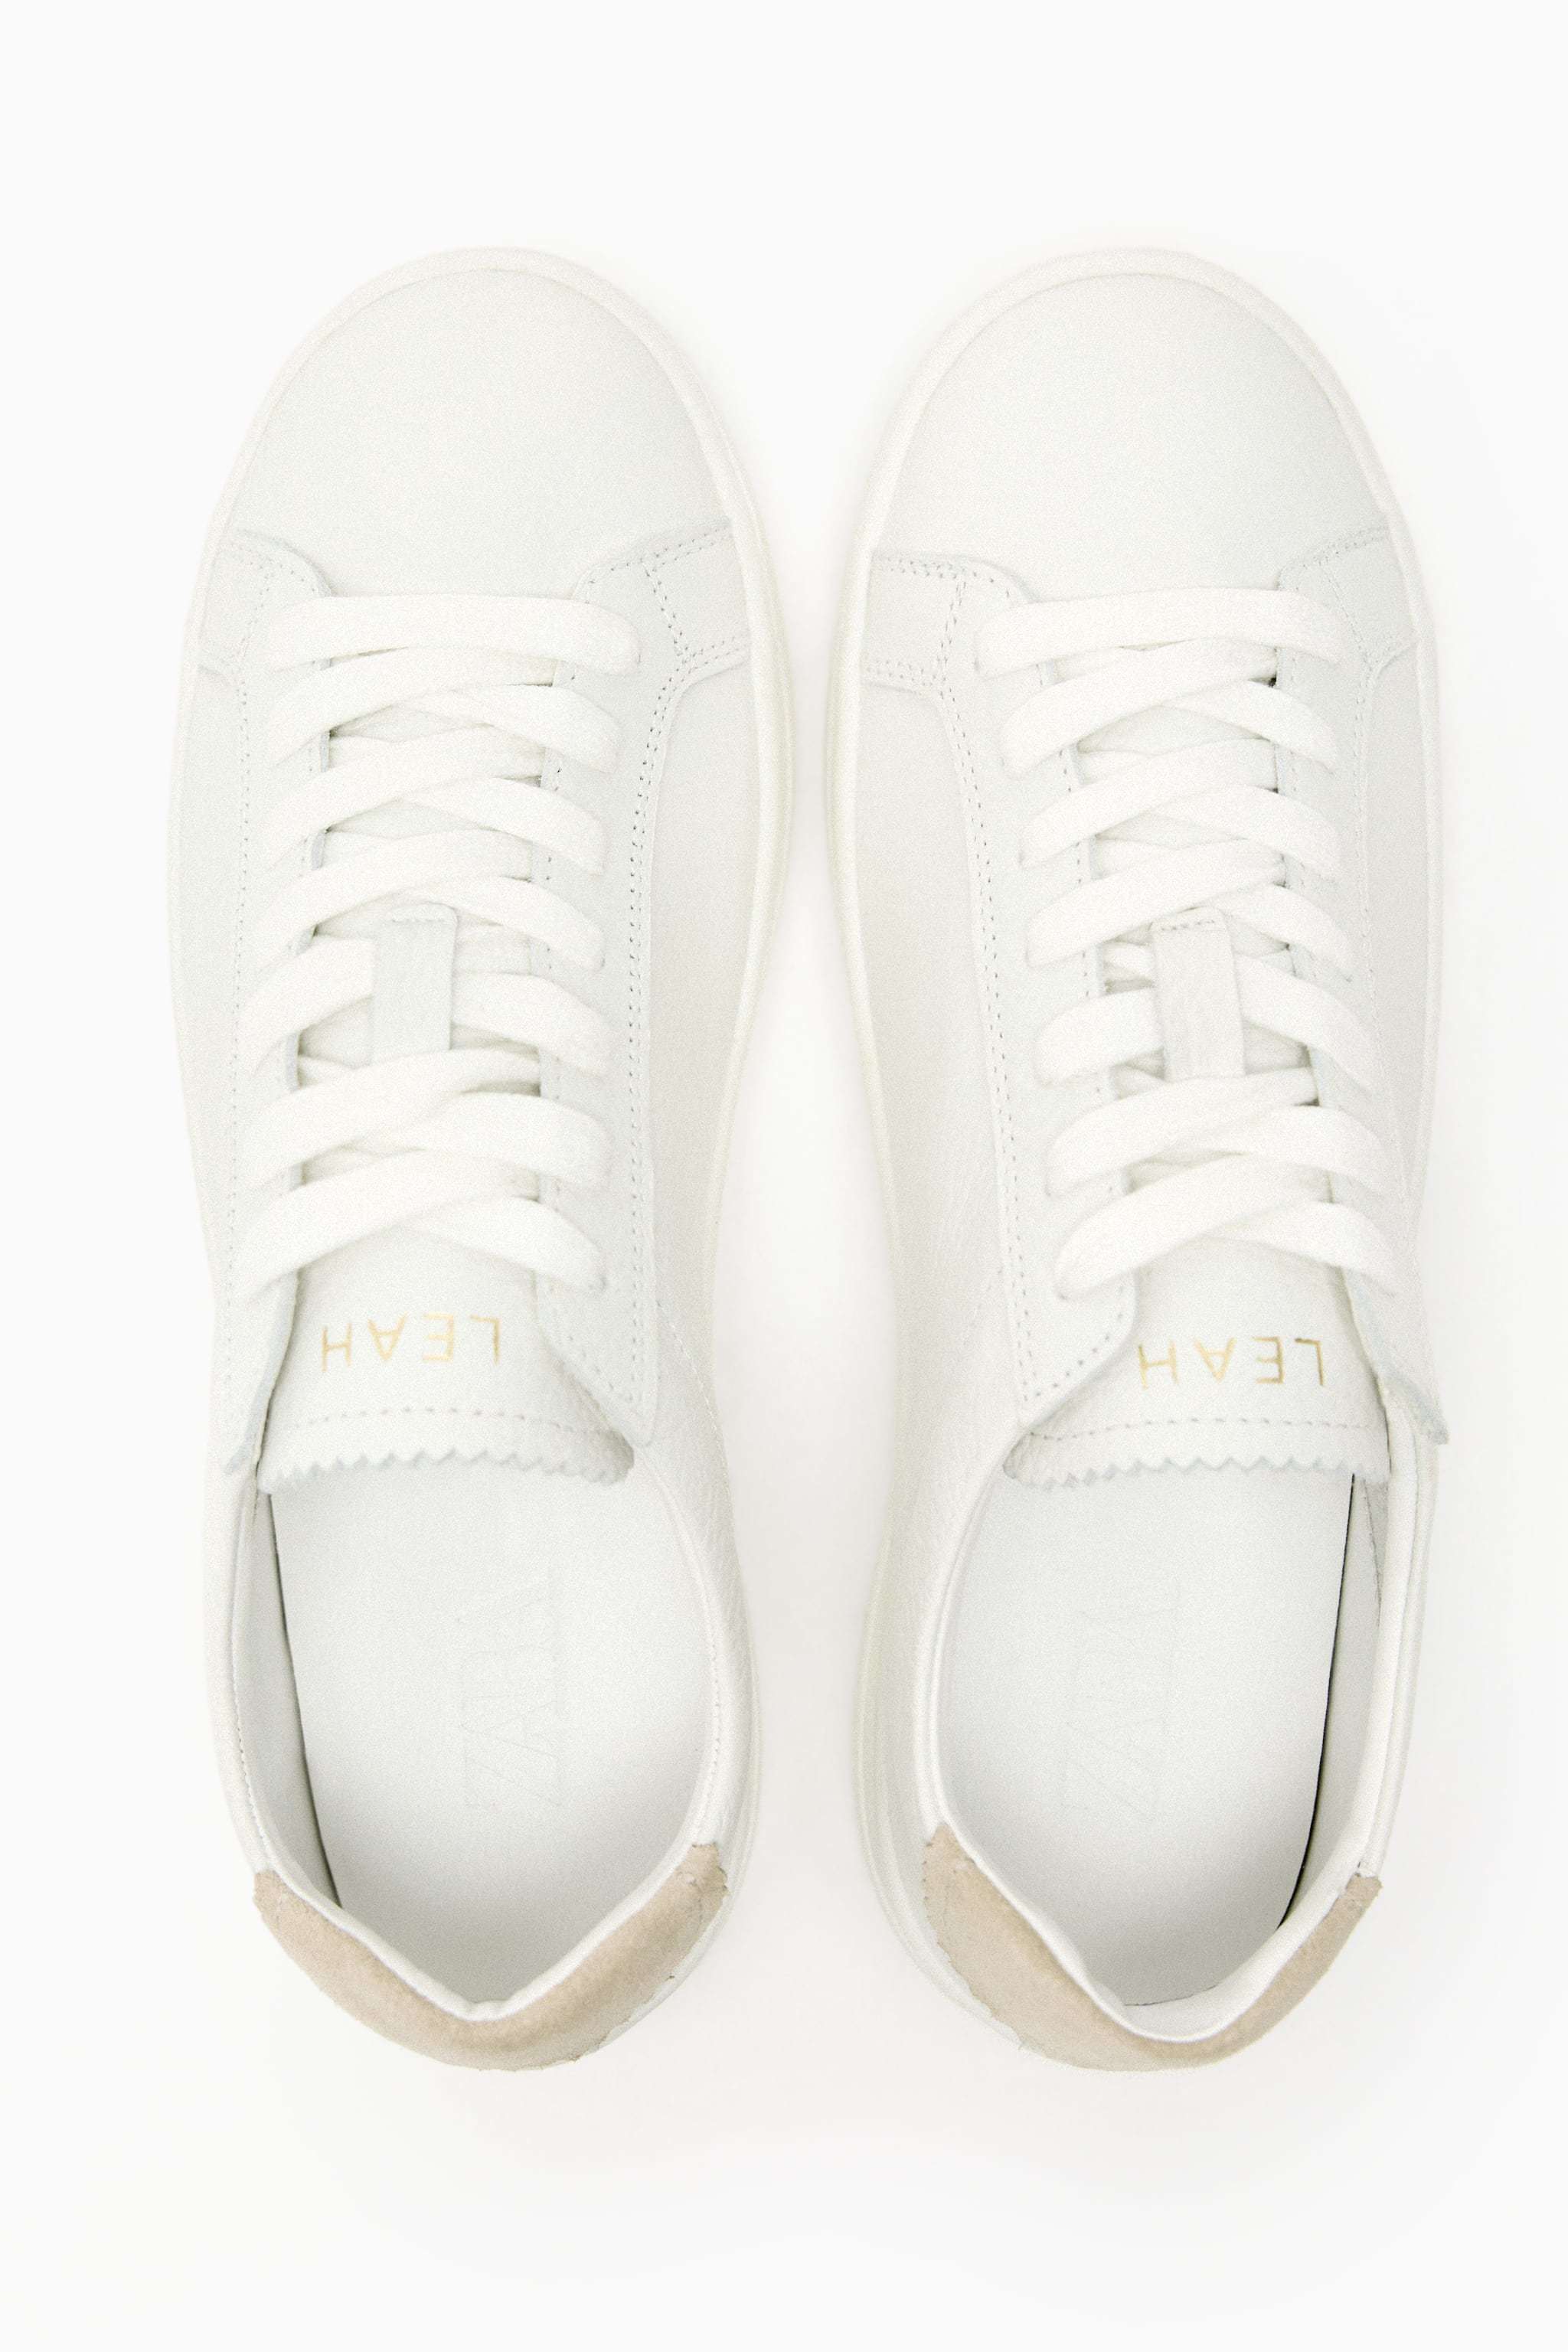 Zapatillas blancas de Zara (39,95 euros).